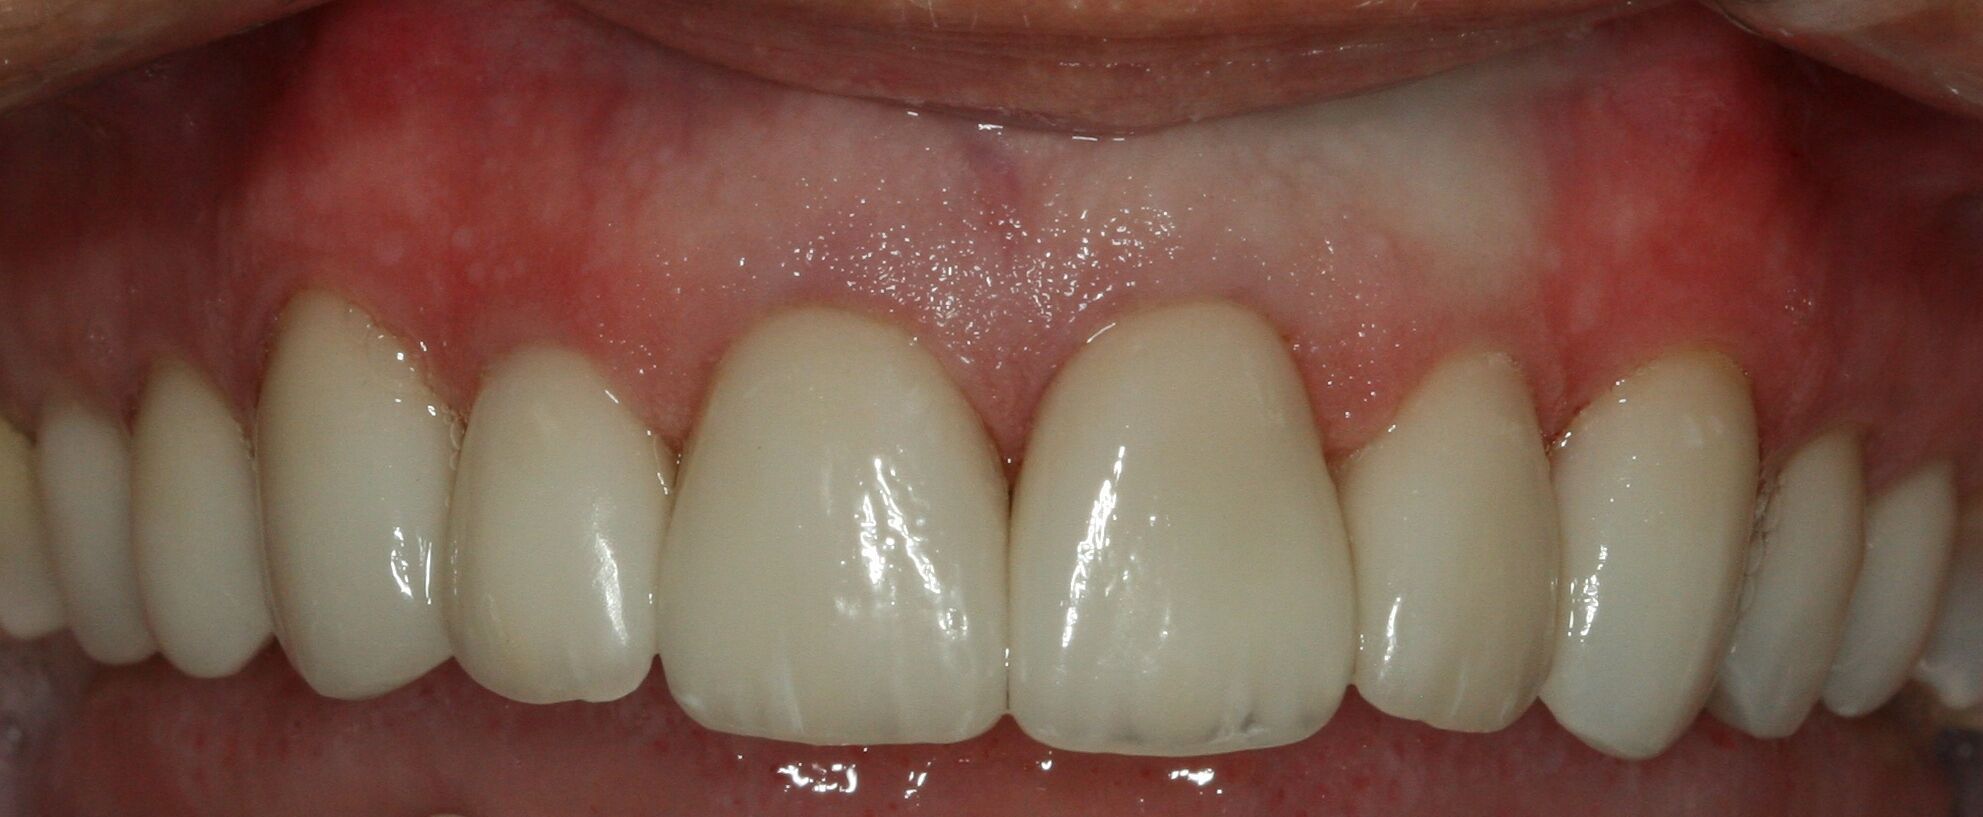 whiter teeth from veneers